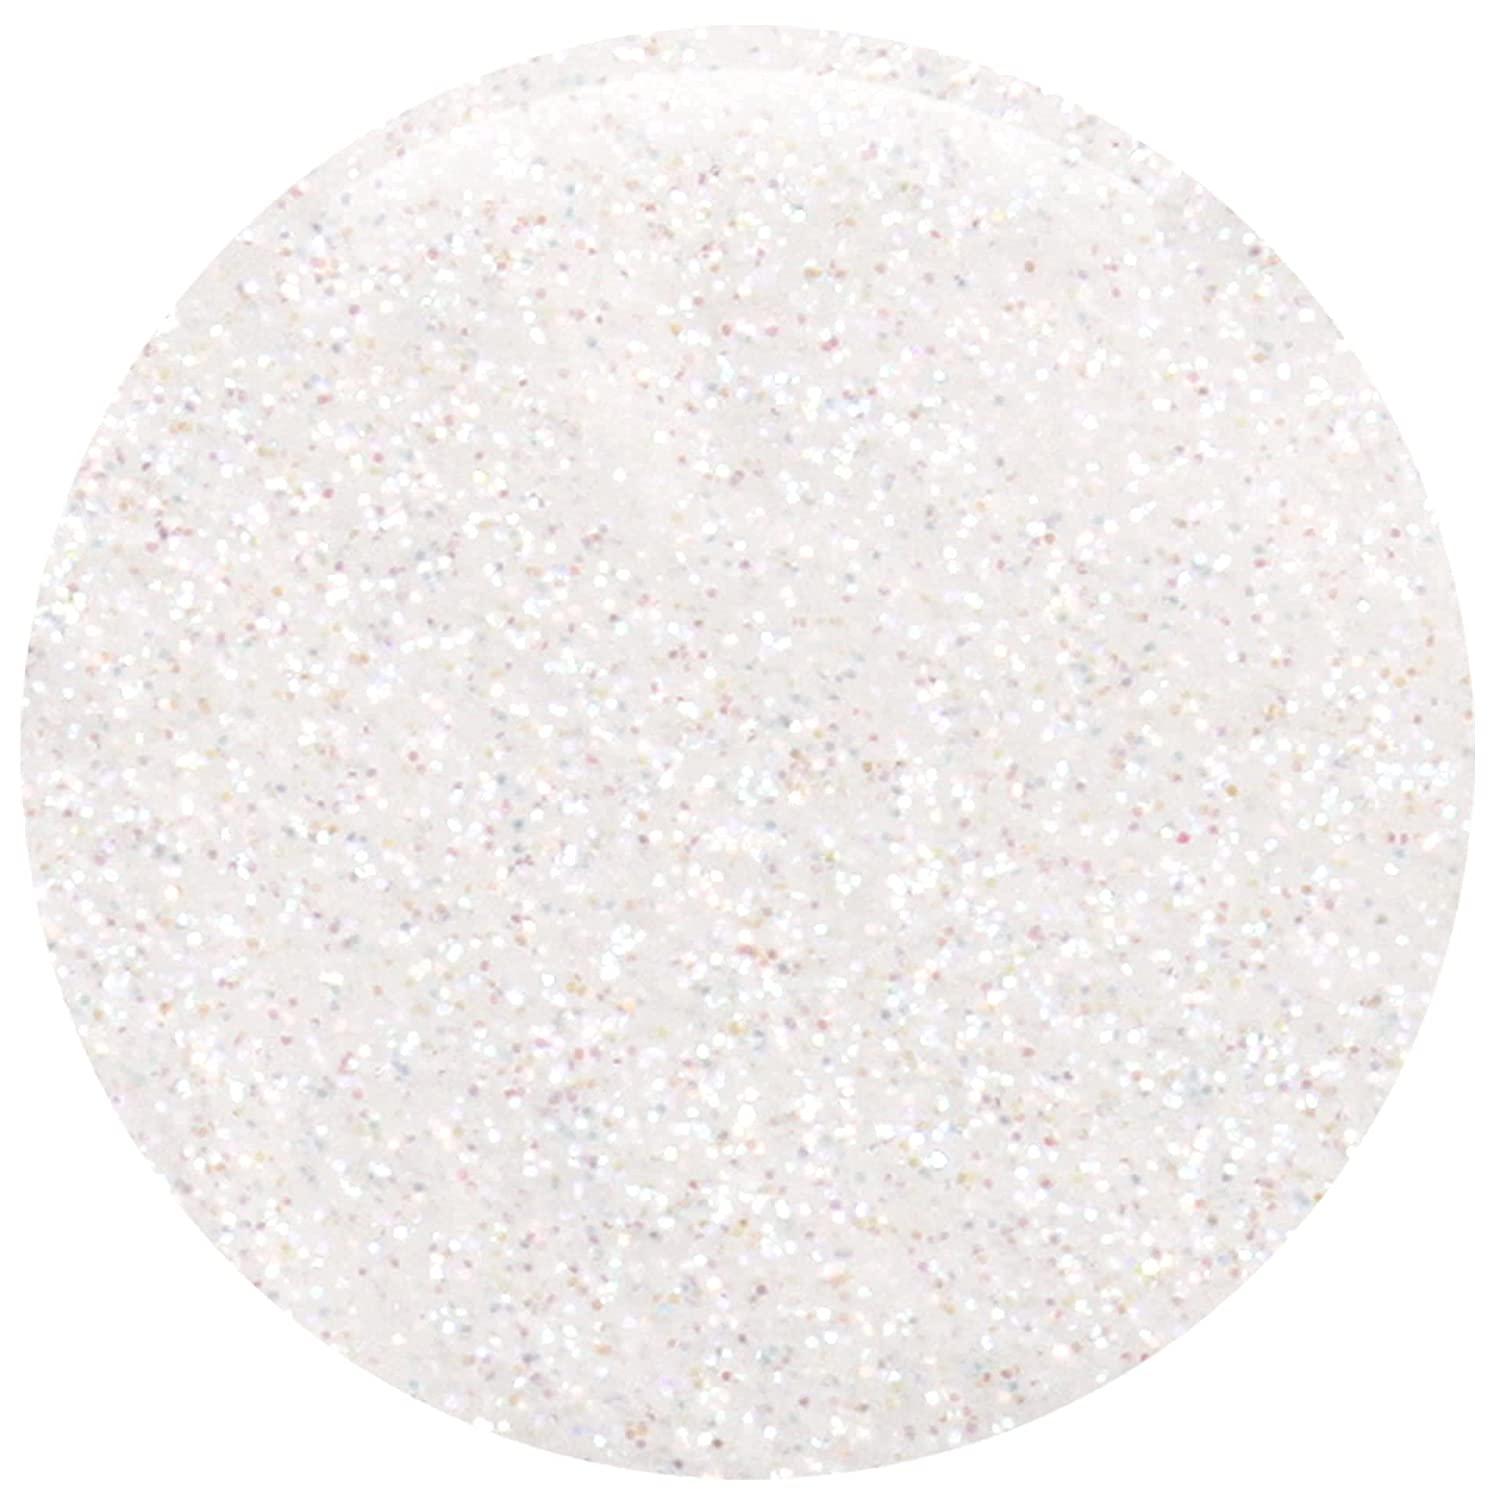  GLITTIES - Diamond Dust - Nail Art Iridescent Fine